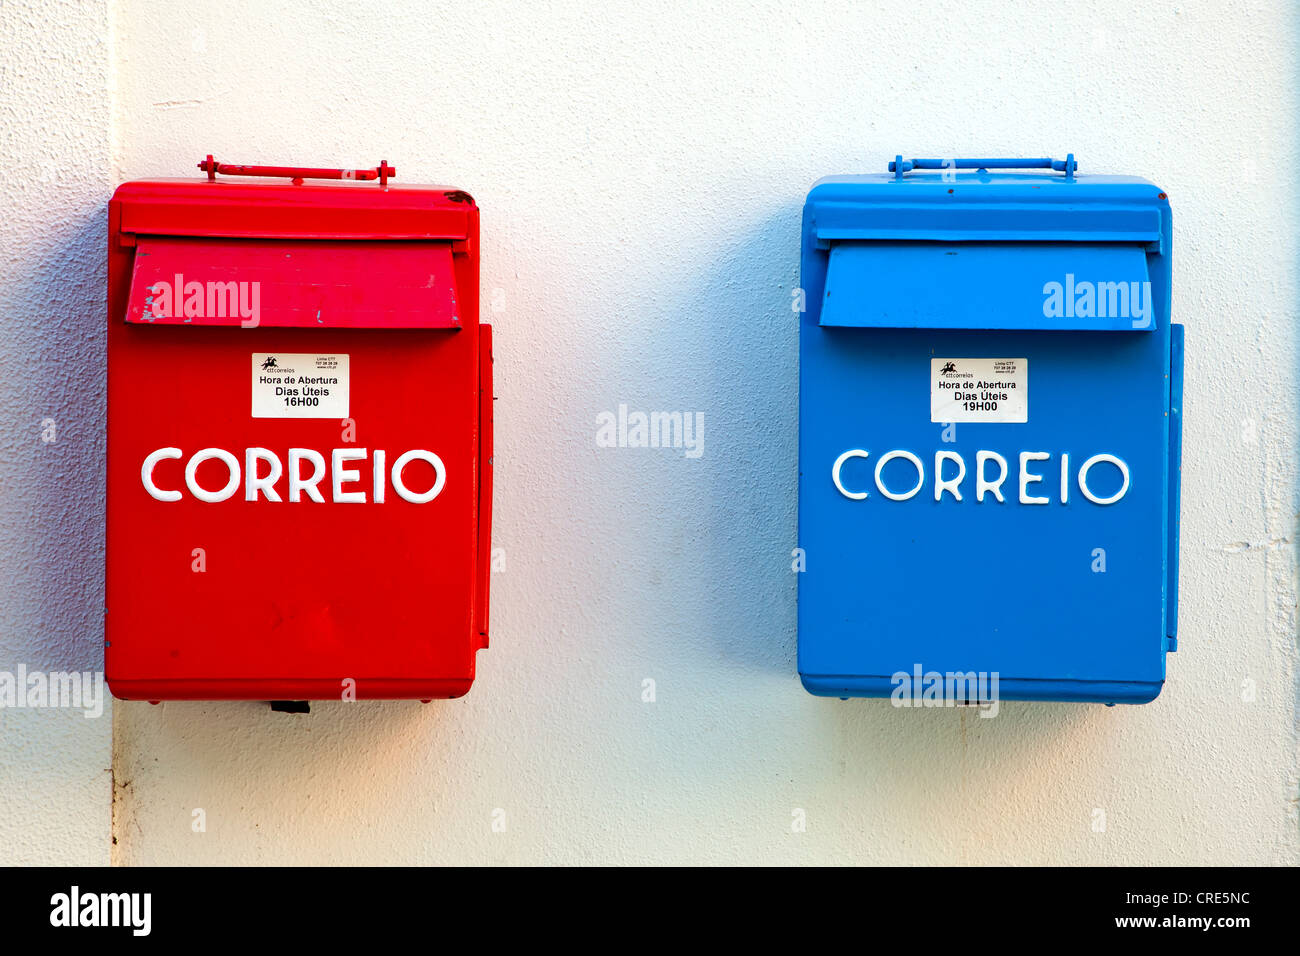 Boîtes aux lettres de la poste portugaise, Correio, en rouge et bleu pour les heures de collecte différentes, dans le quartier de Belem Banque D'Images